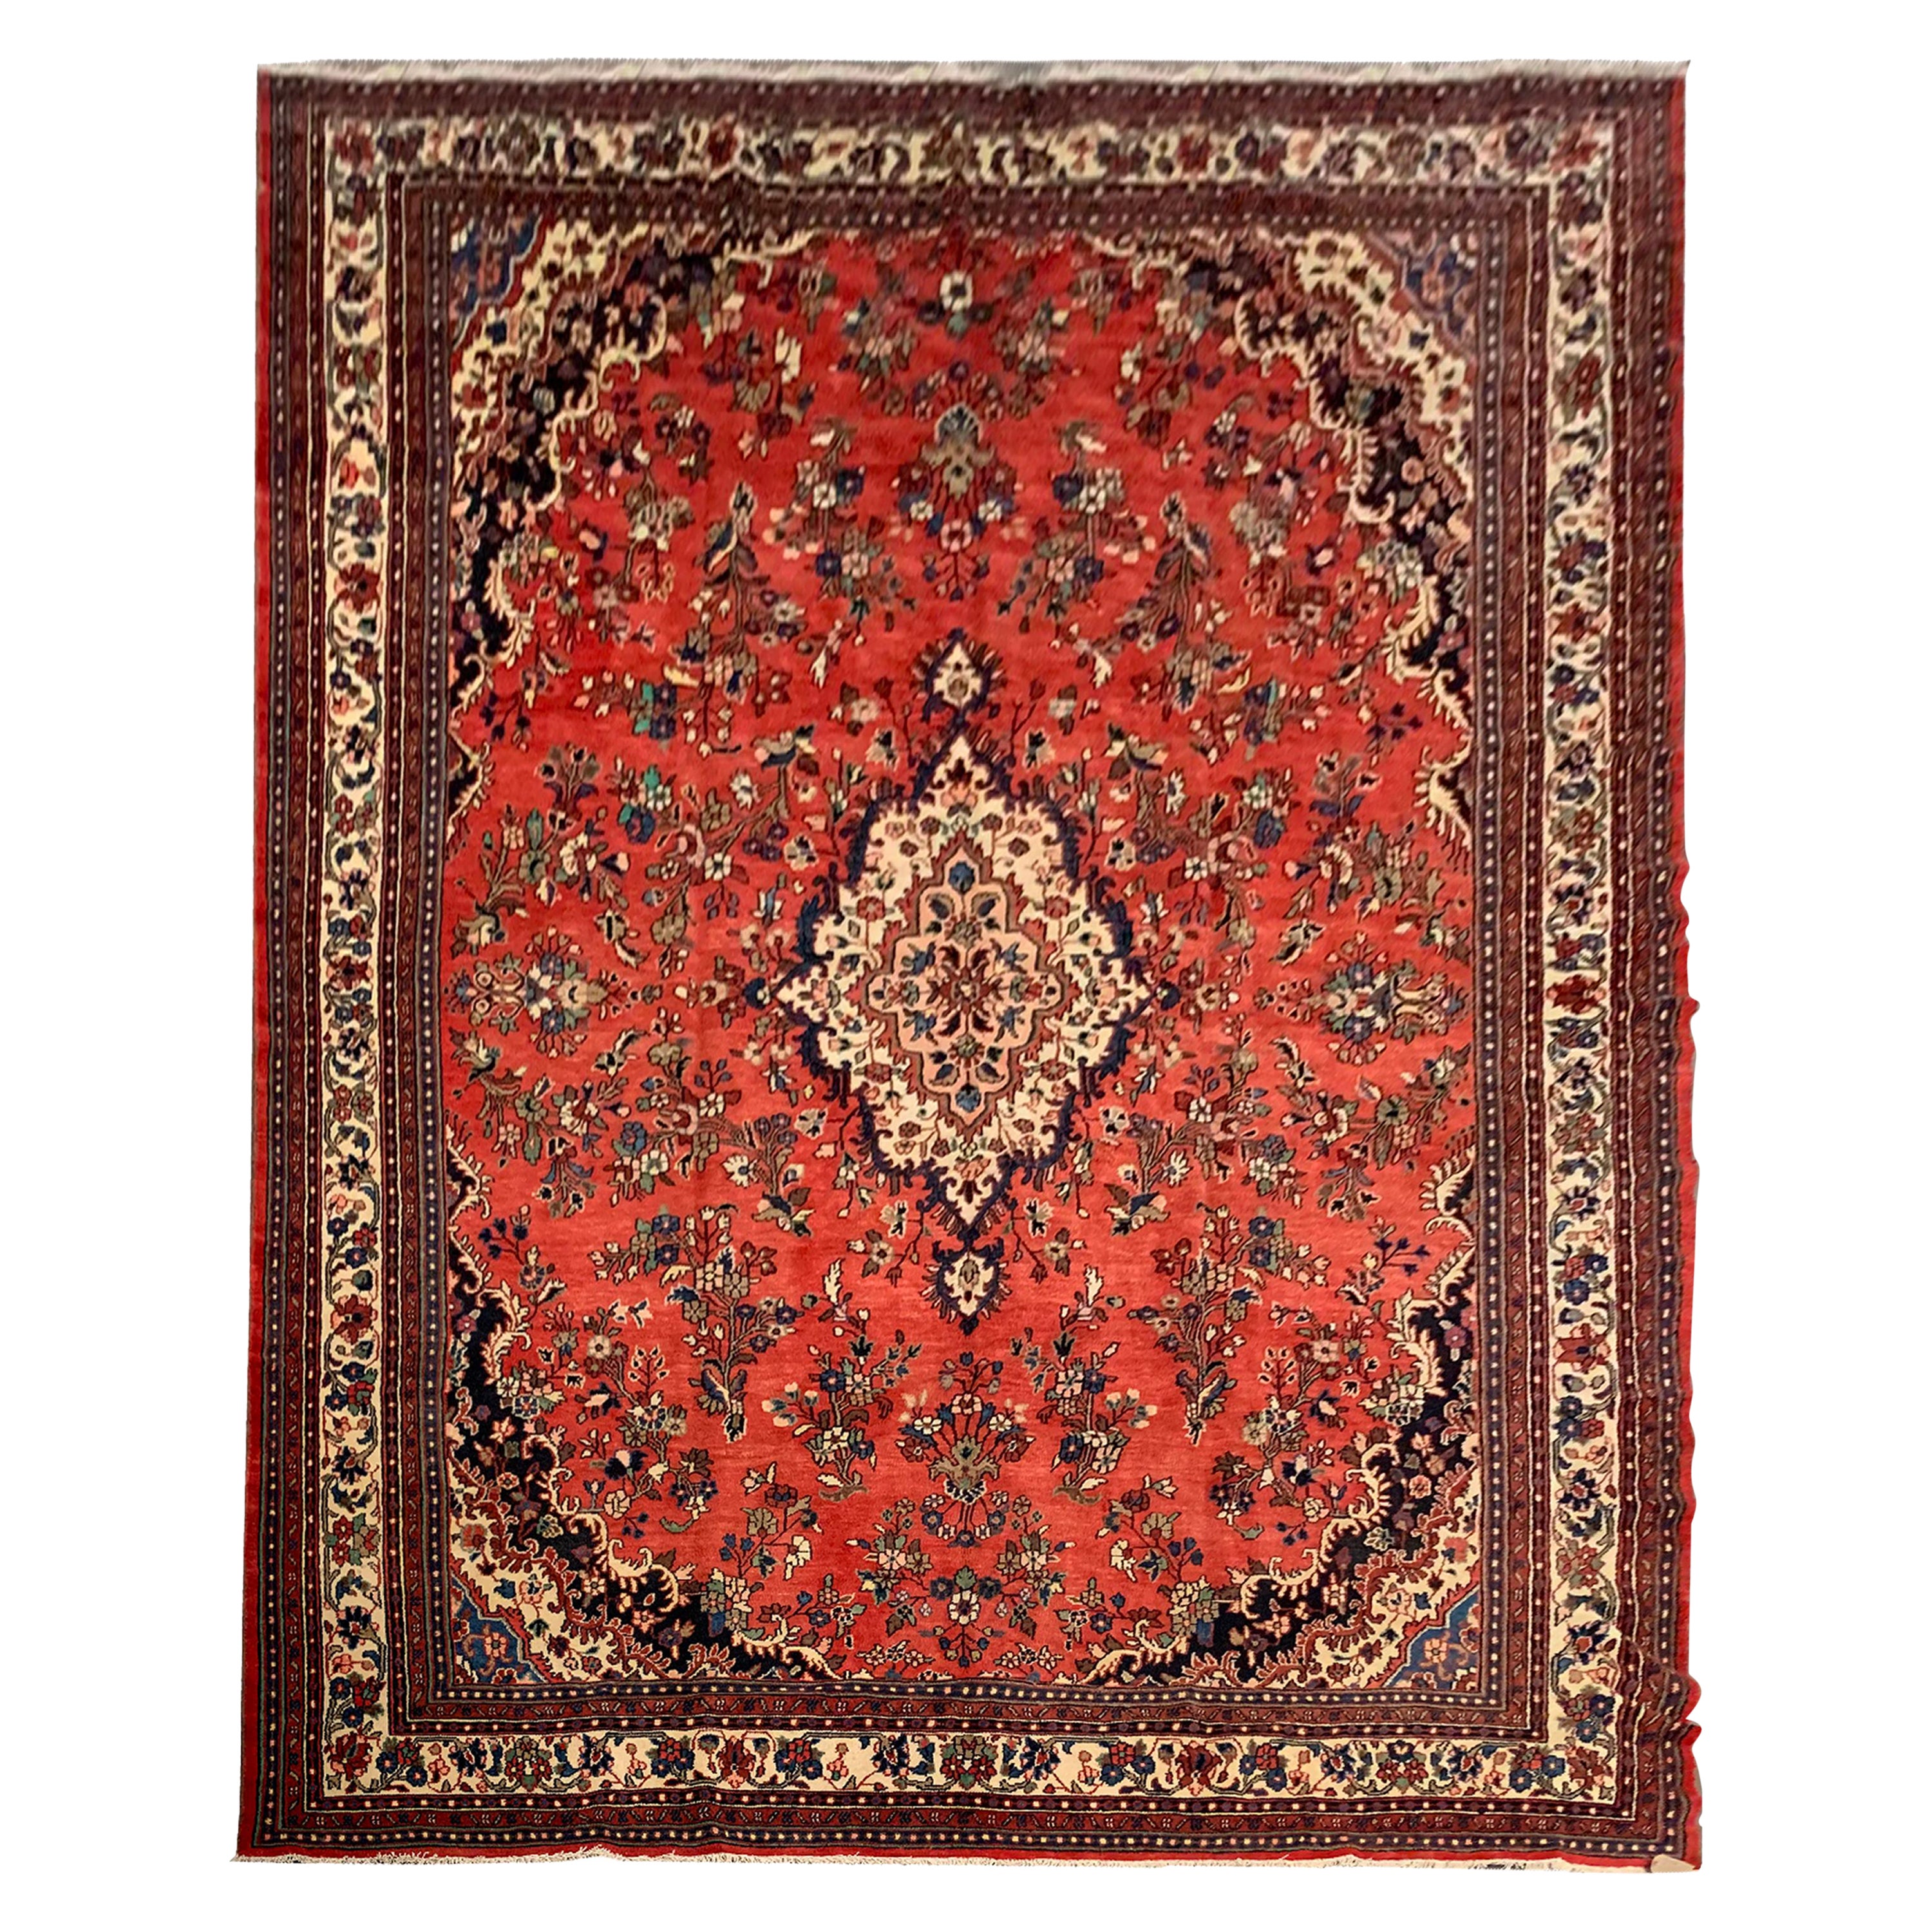 Vintage Traditional Floral Antique Designer Inspired Rug Carpet 